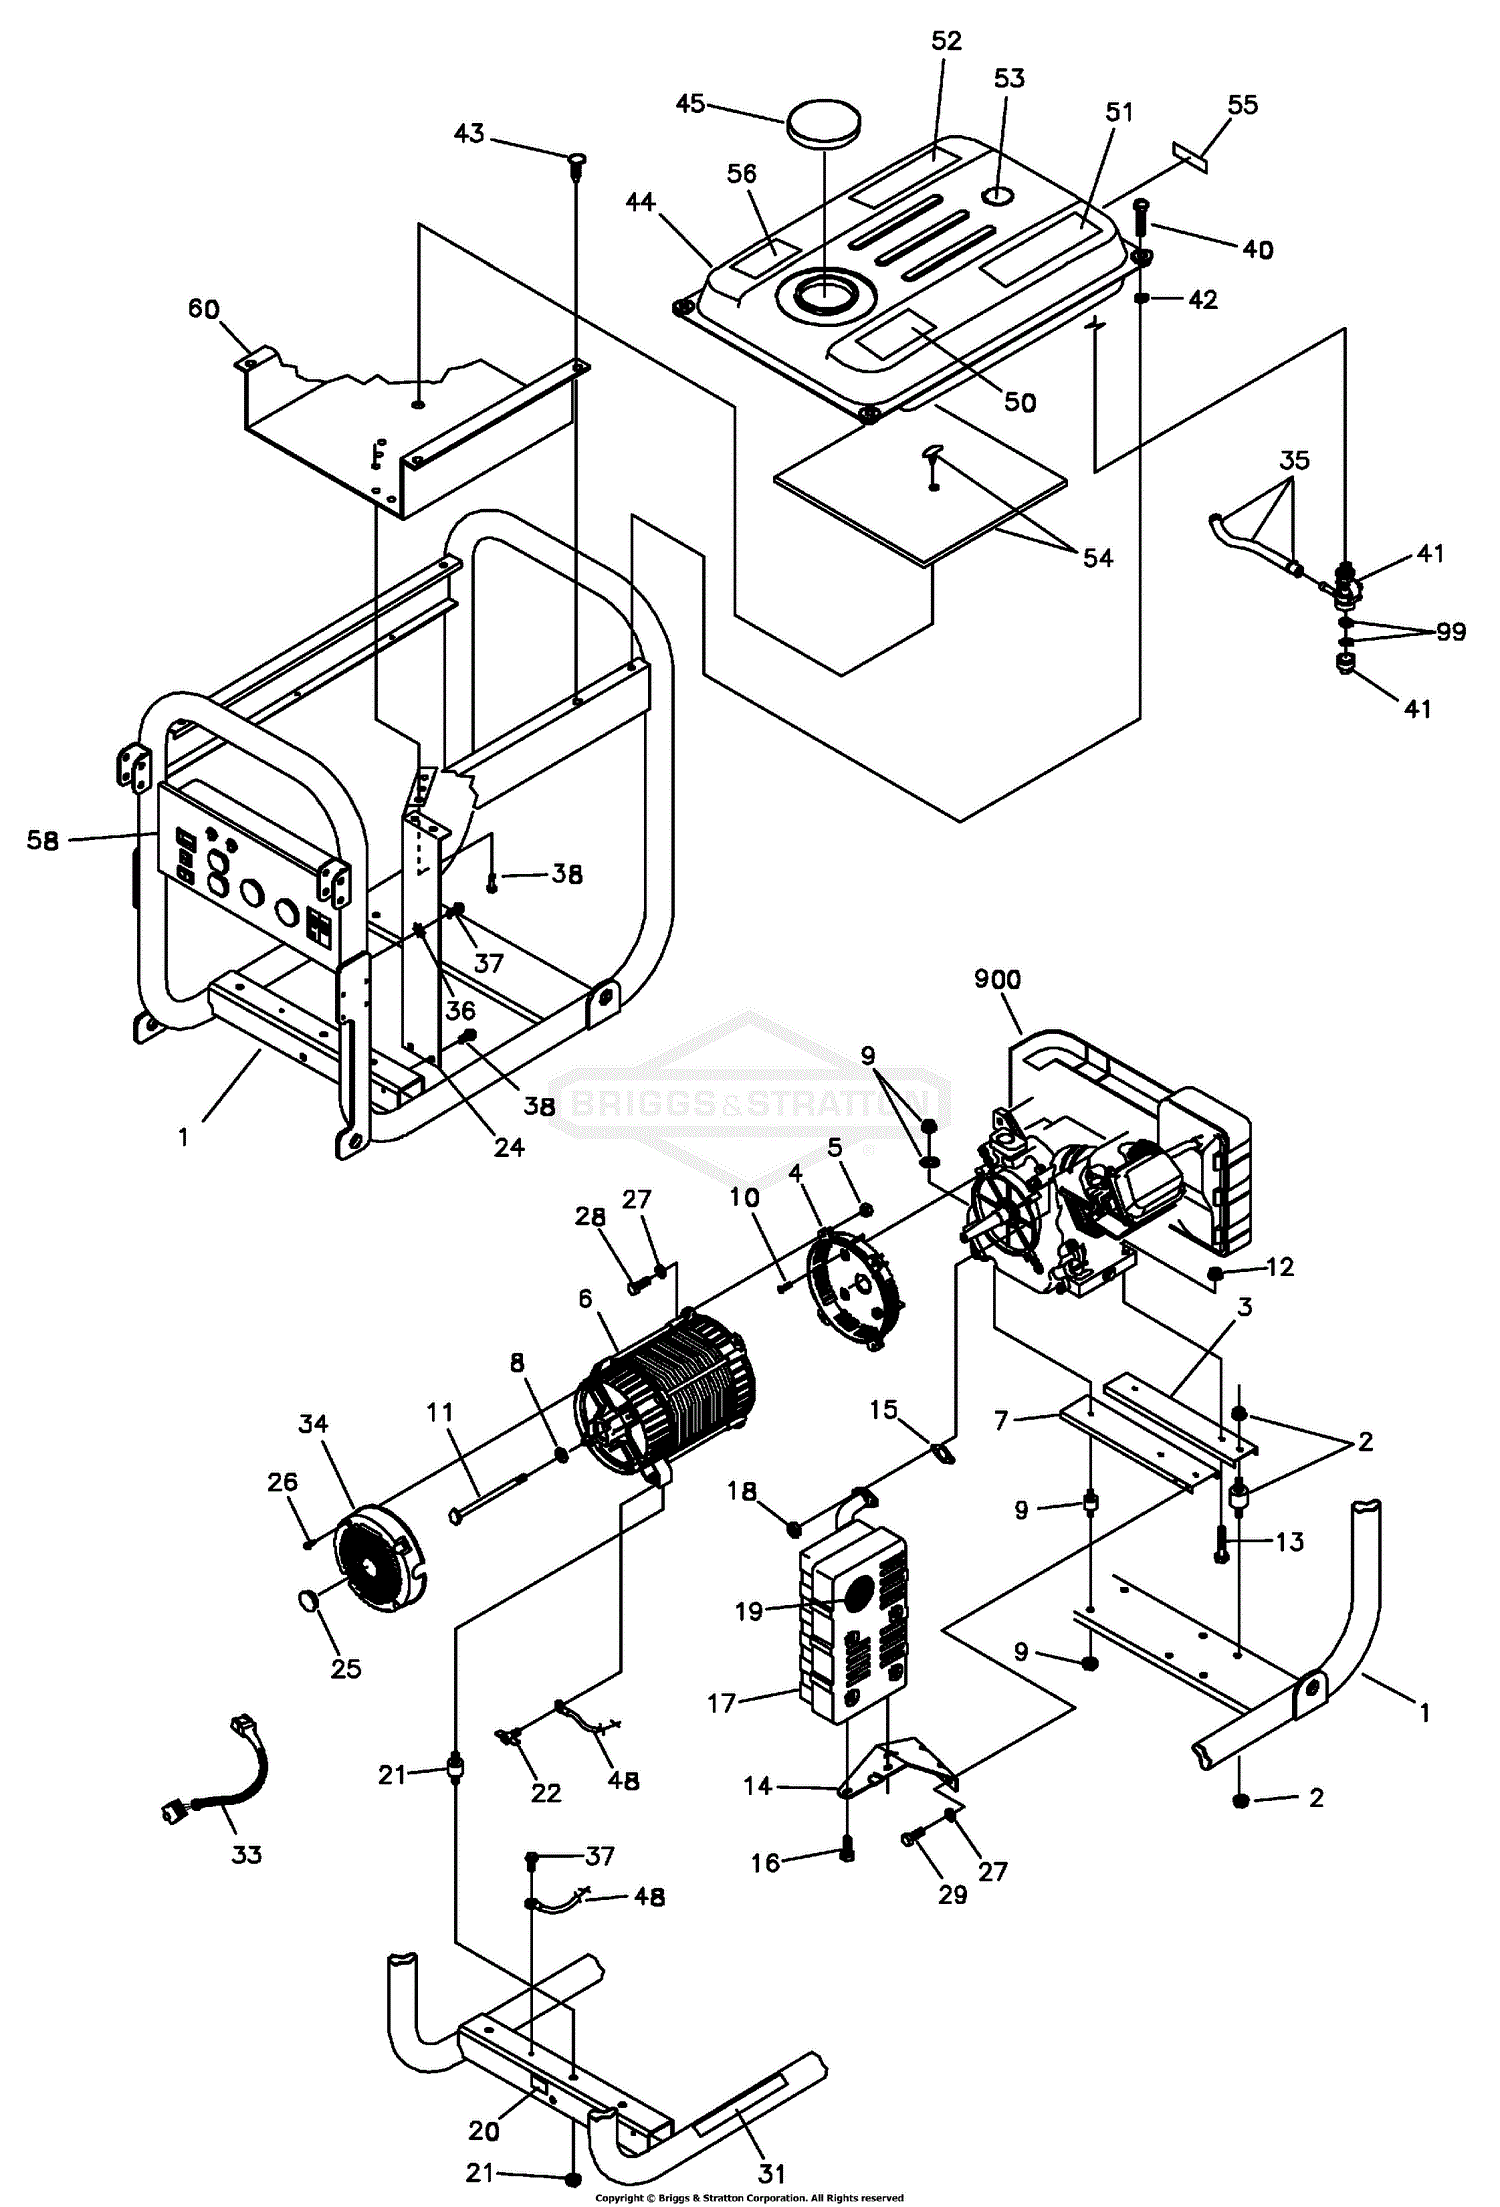 briggs and stratton 450e series parts diagram